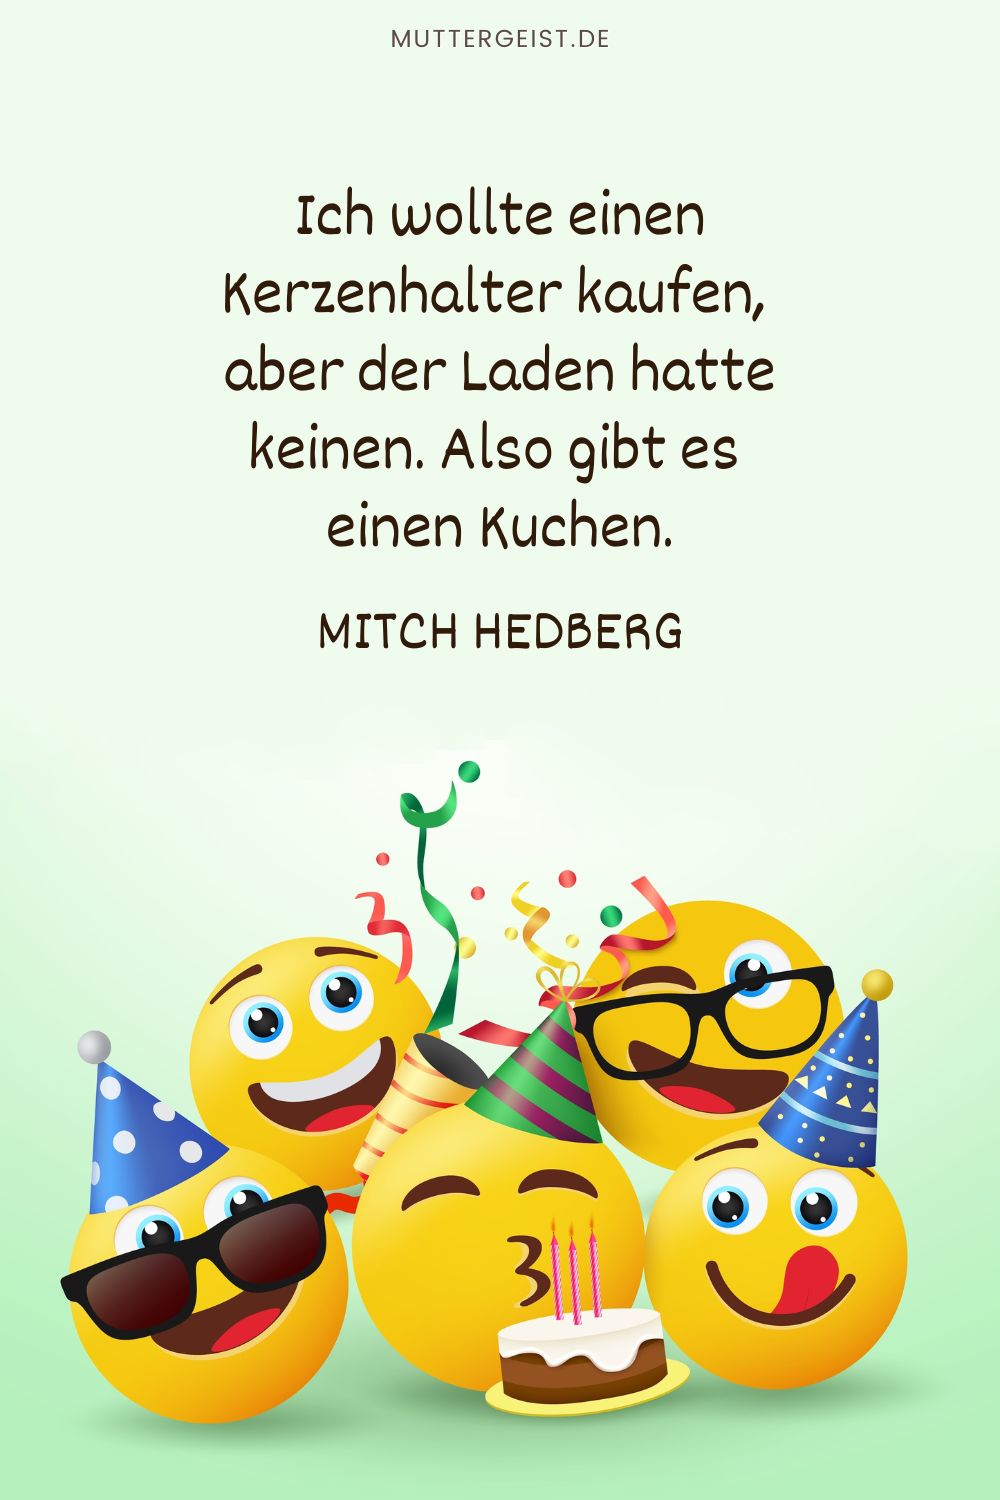 Lustiges Geburtstagszitat: „Ich wollte einen Kerzenhalter kaufen, aber der Laden hatte keinen. Also gibt es einen Kuchen.“ – Mitch Hedberg